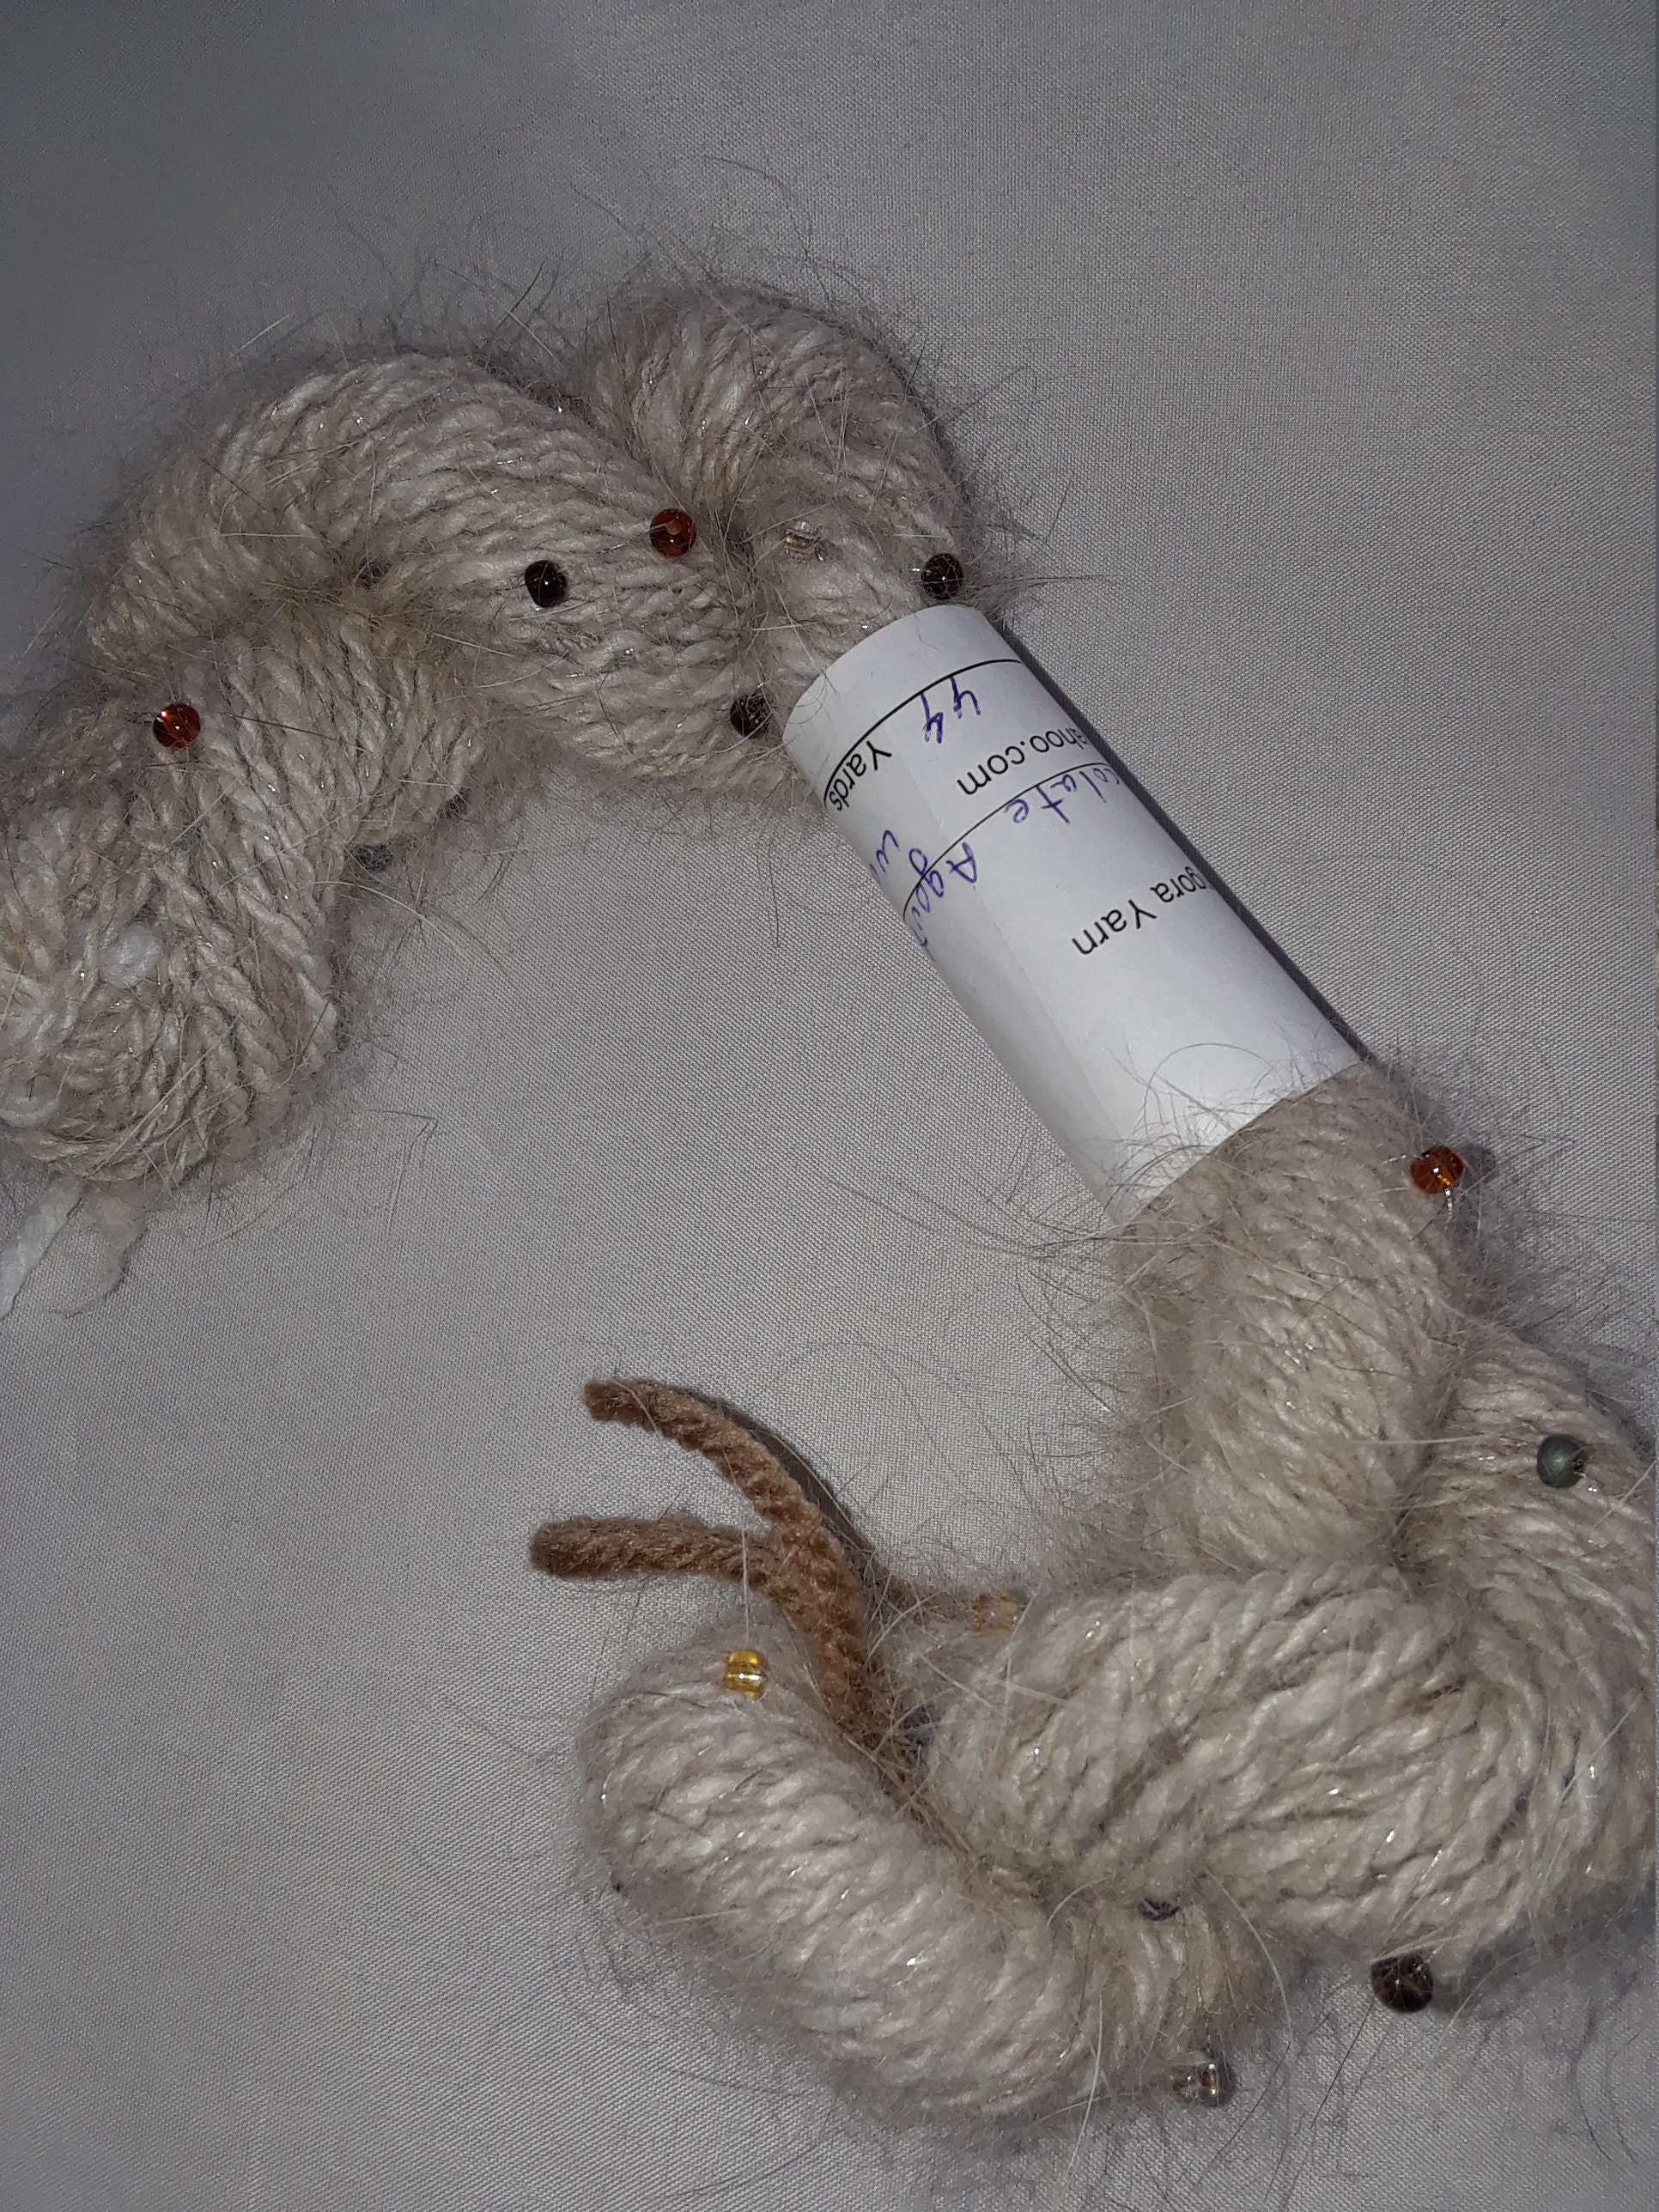 Angora White, Fluff Yarn, Hand Knitting, Rabbit Angora, 300 Meters 100g  Balls 